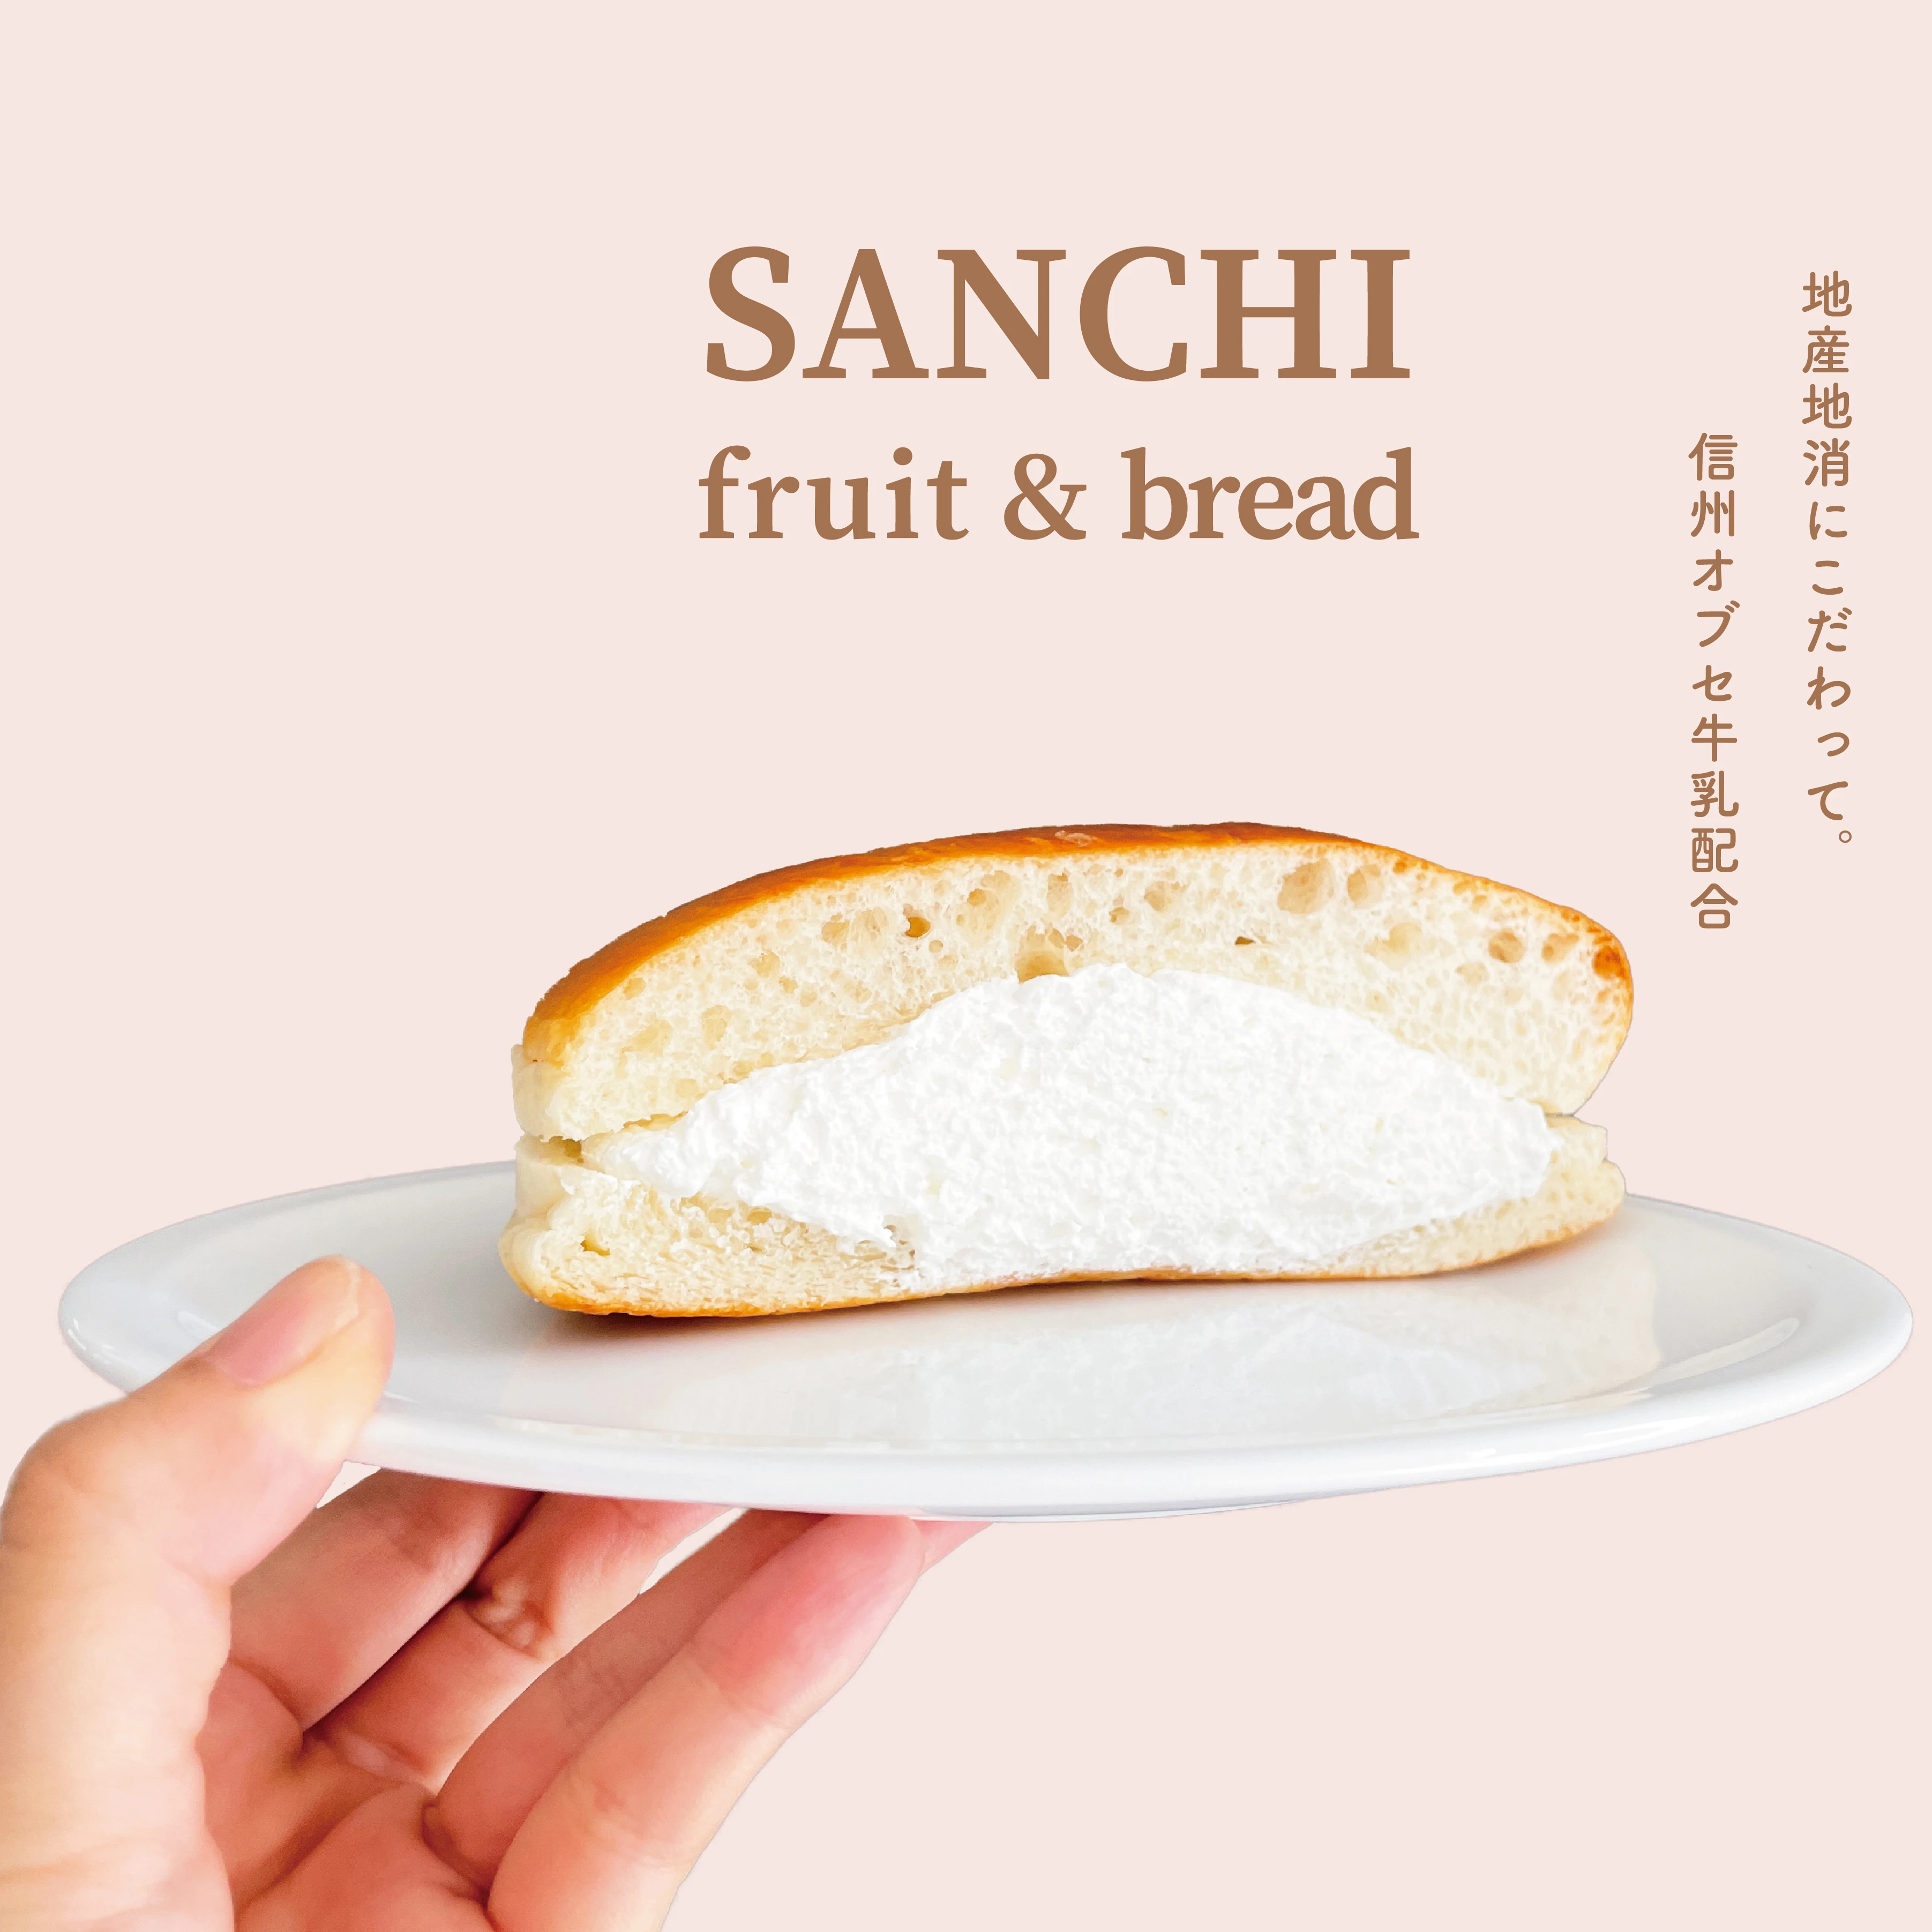 長野県ご当地パン「牛乳パン」が食べられるお店　サンドイッチとフルーツのお店「サンチ」の牛乳パン